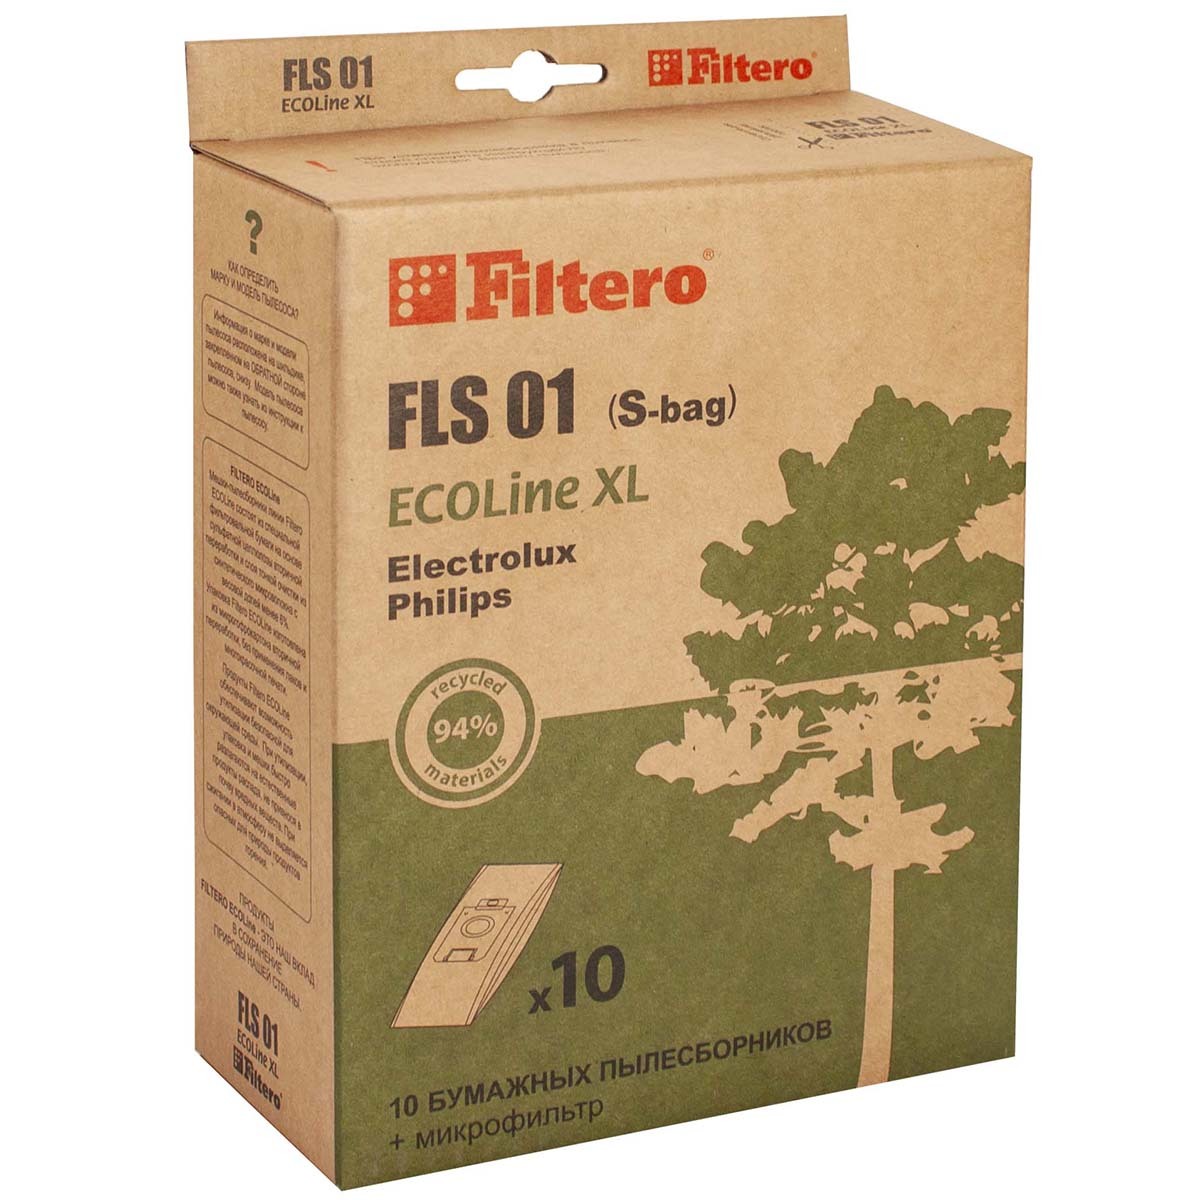 Пылесборники Filtero FLS 01 (S-bag) (10+) XL ECOLine набор пылесборников filtero sam 02 ecoline xl 10 шт